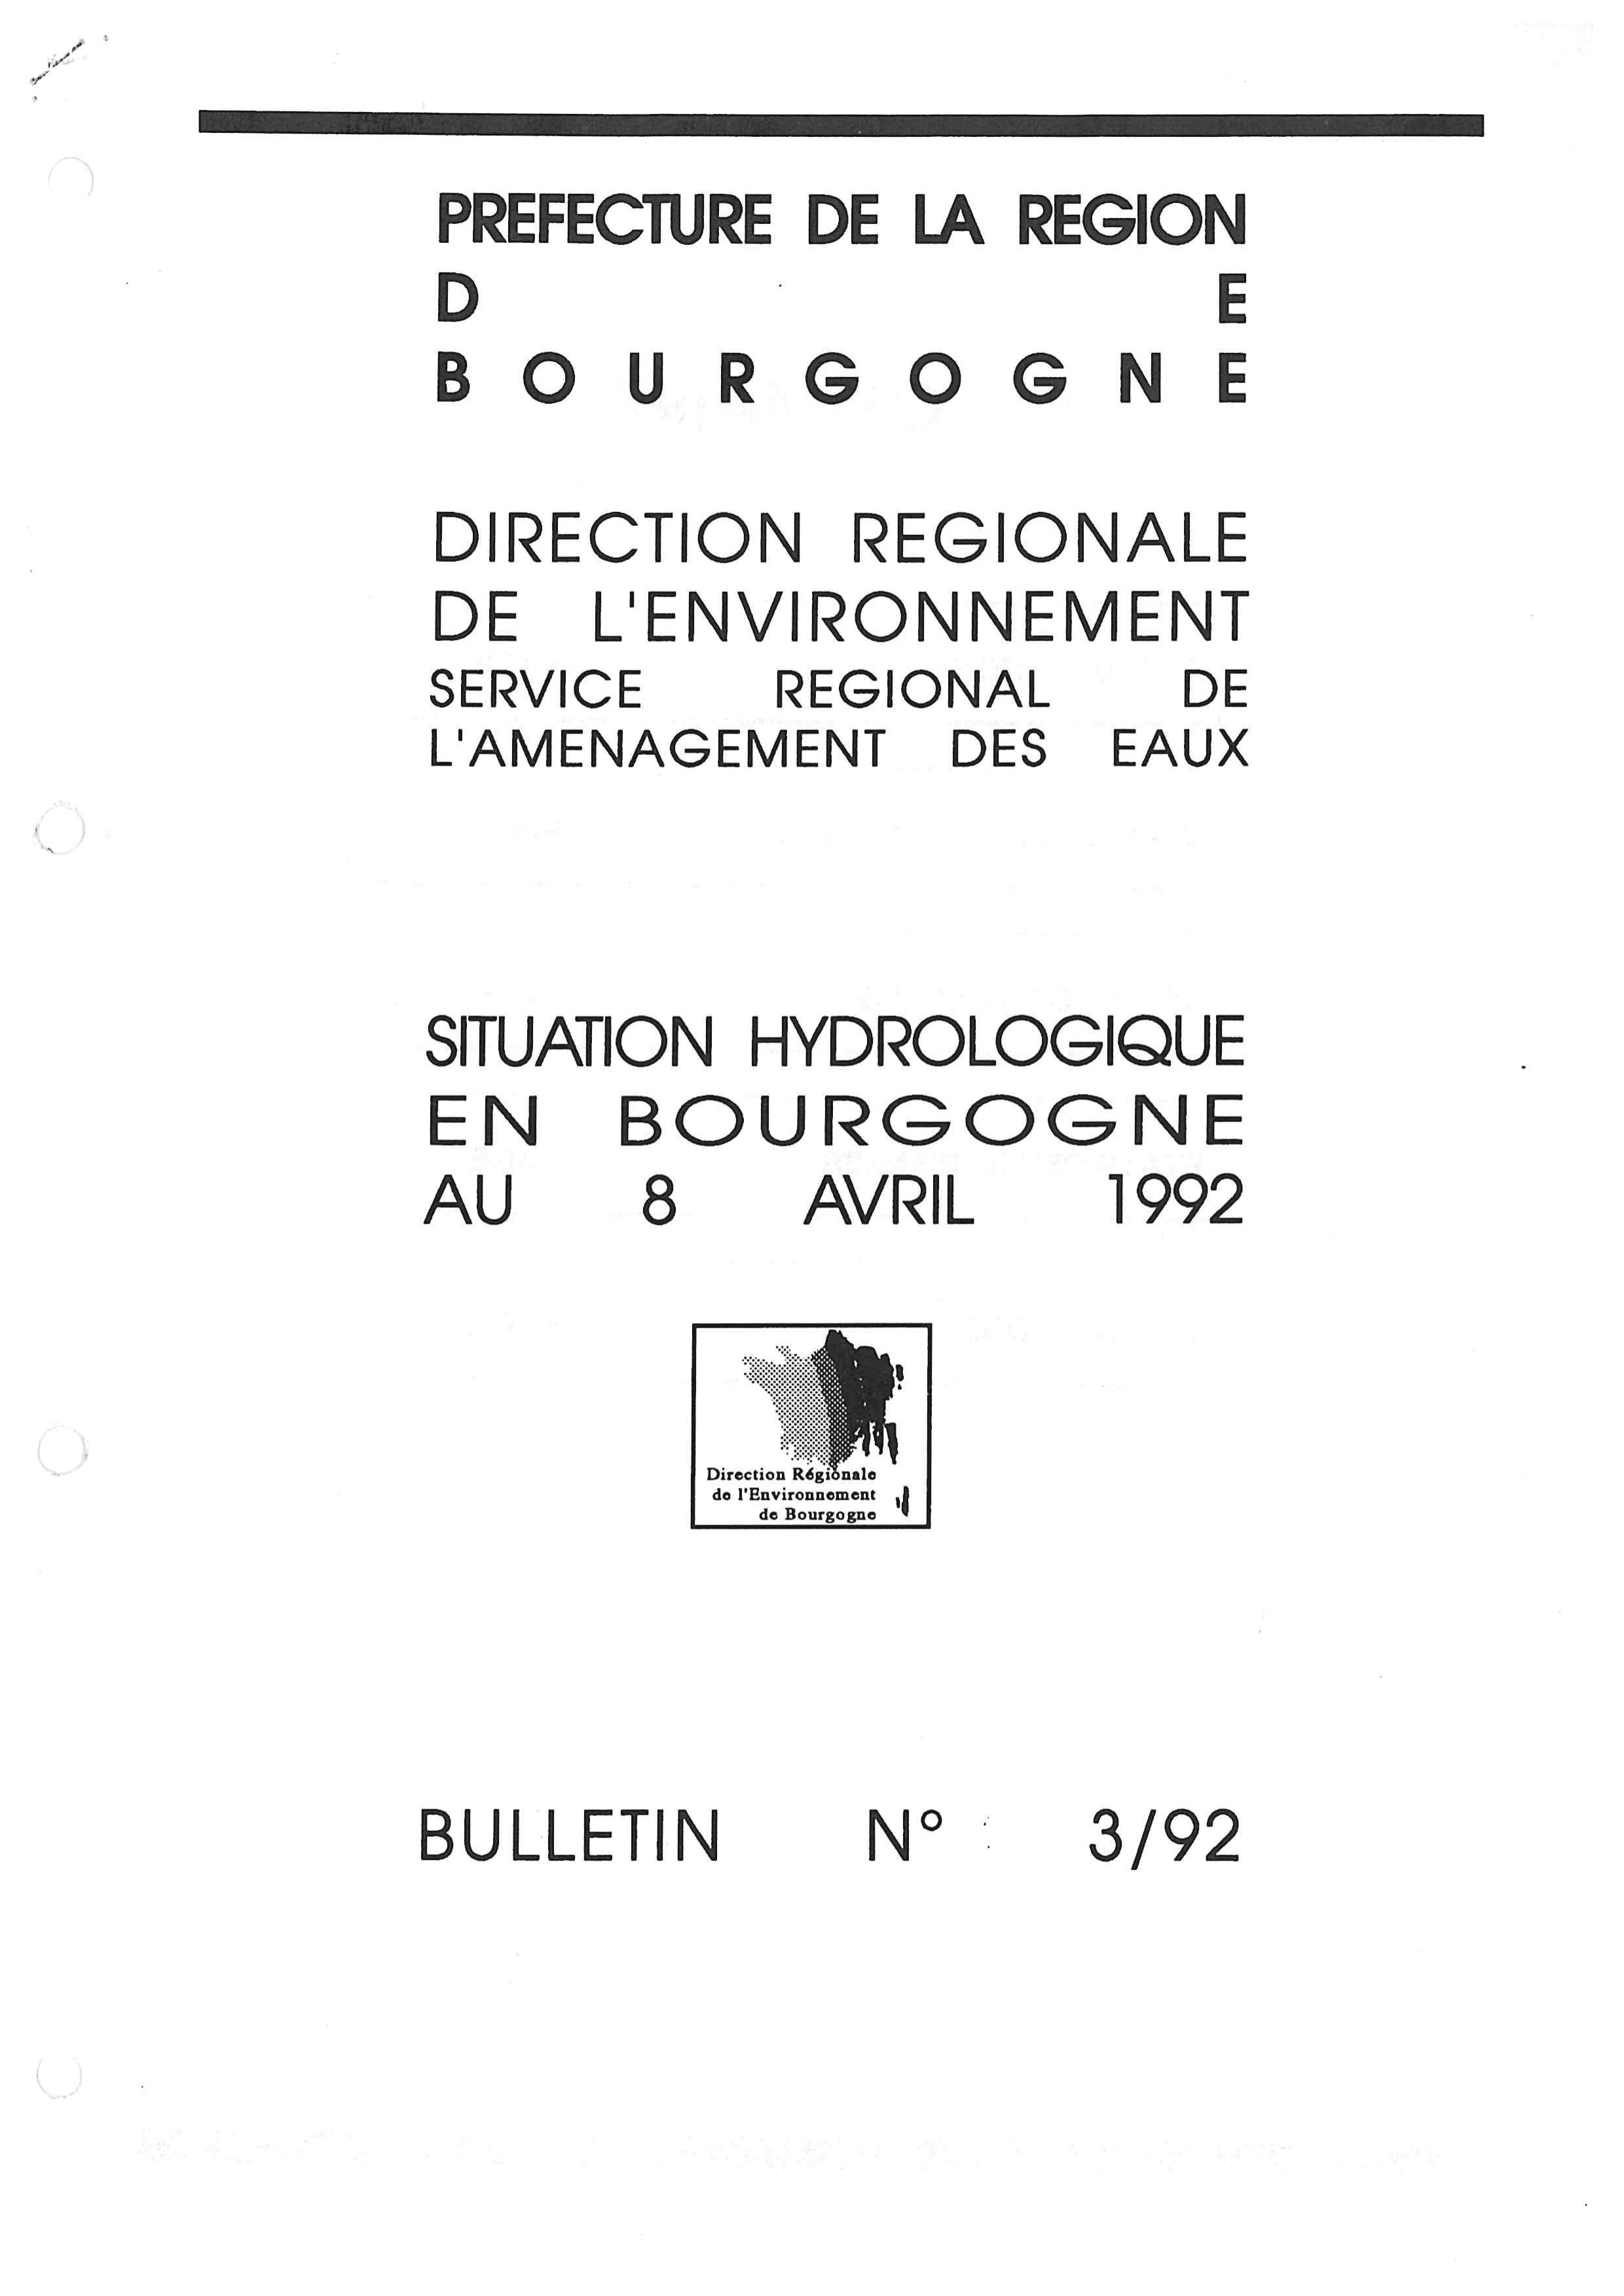 Bulletin hydrologique du mois de mars 1992